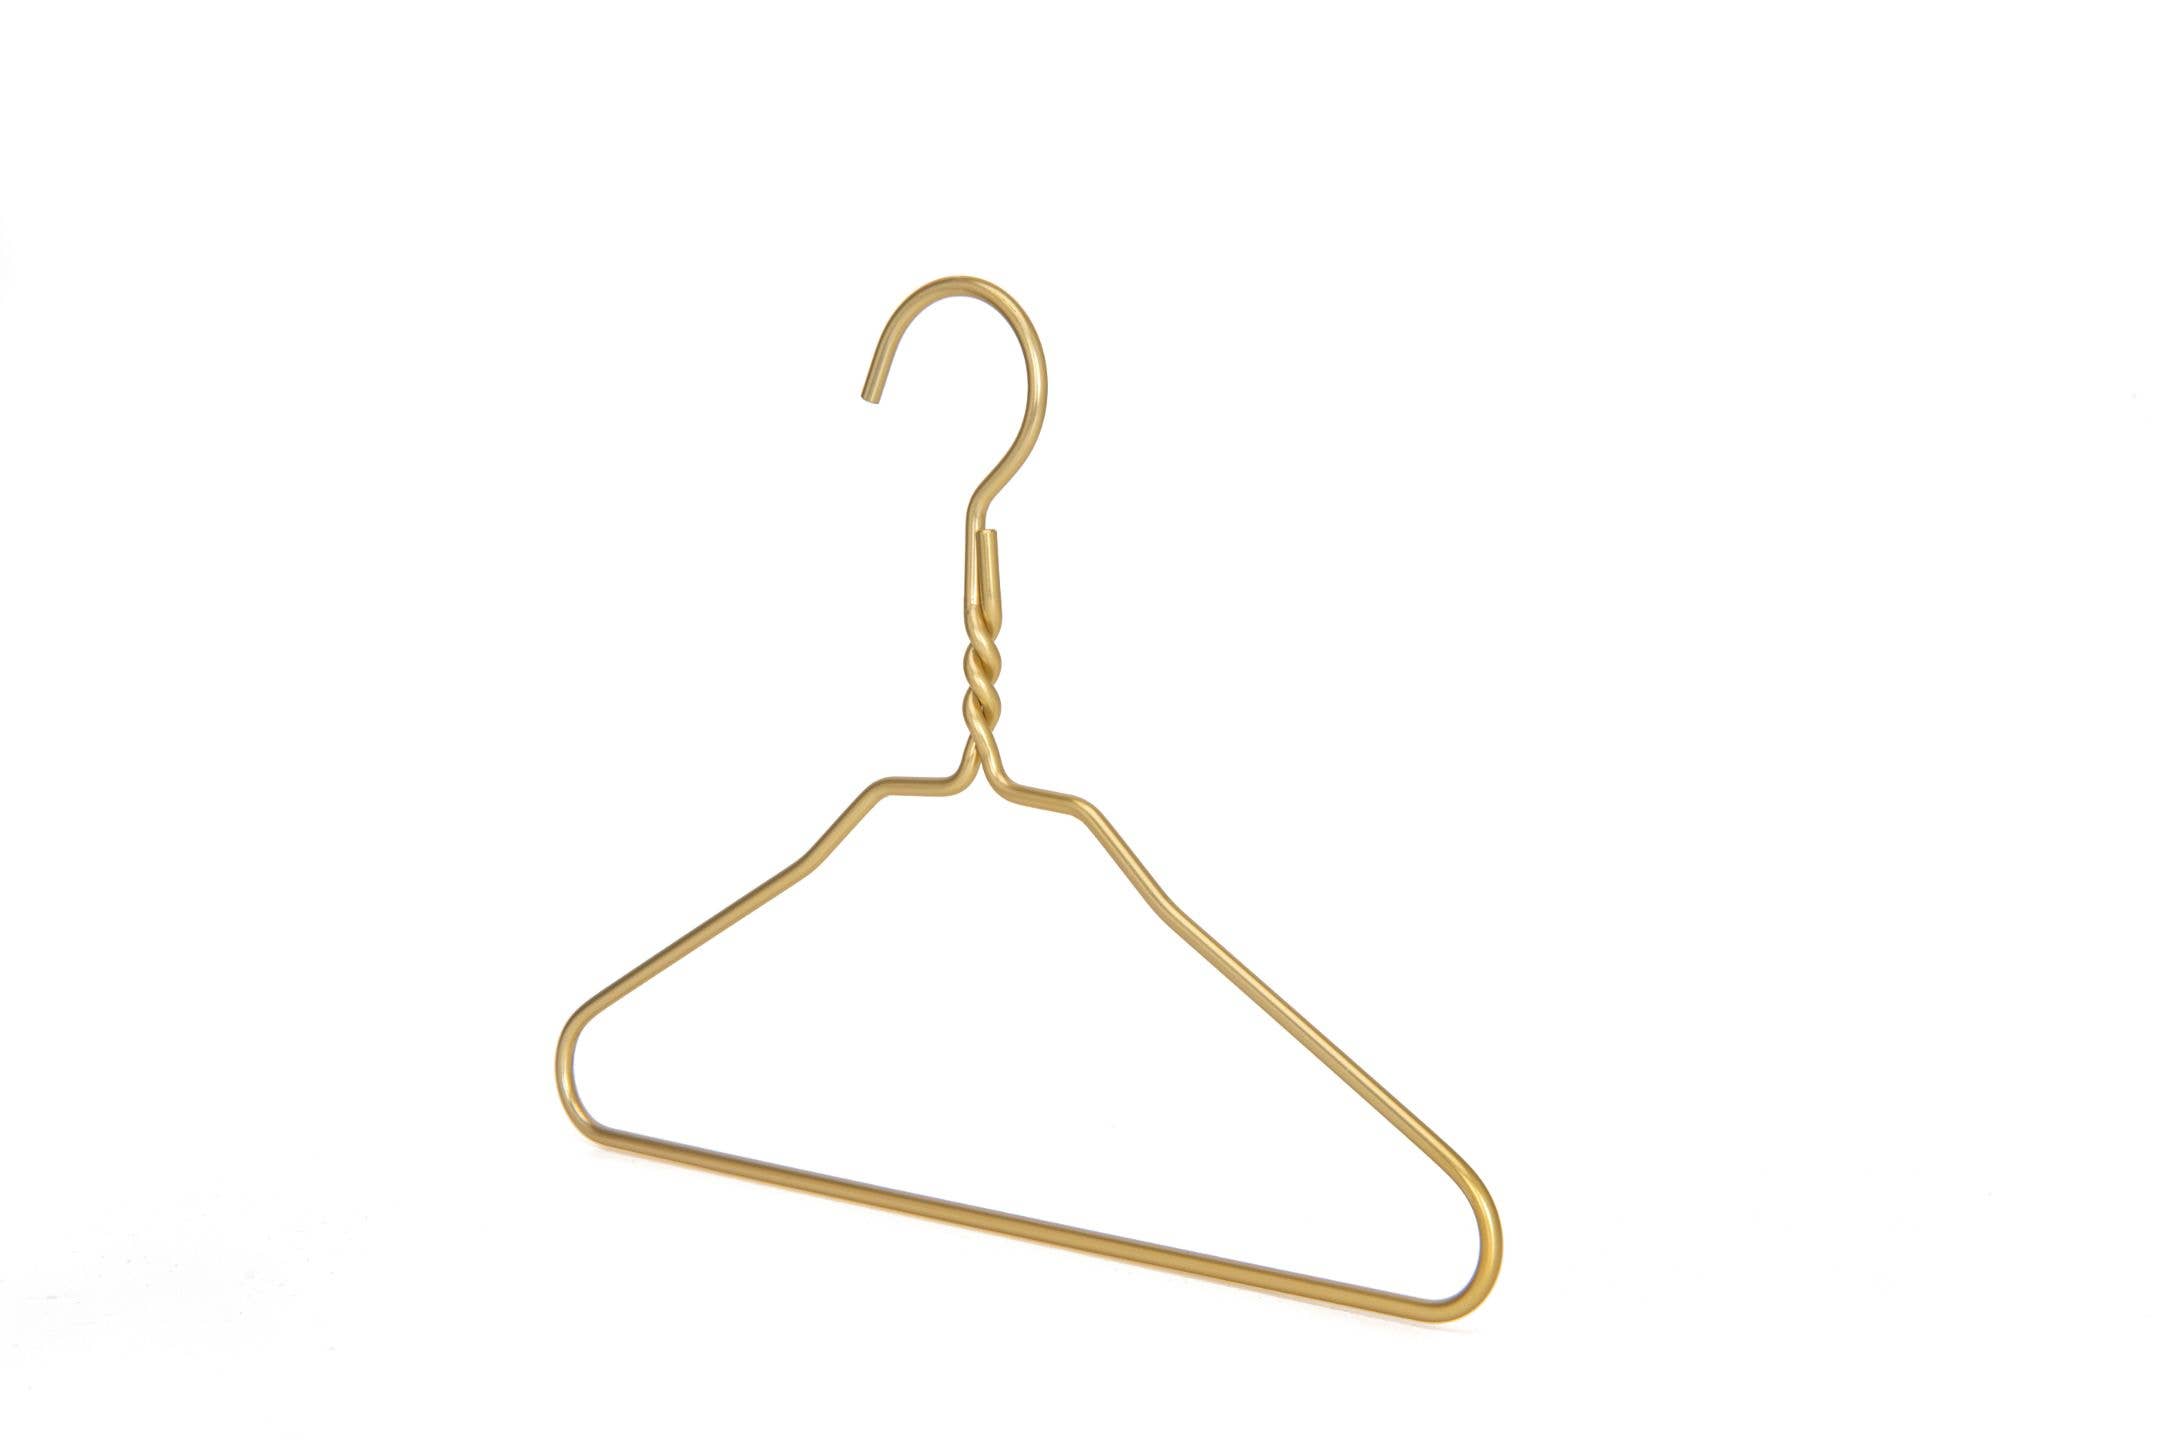 PL032 - Kids Plastic Hanger Swivel Hook, Chrome Hook, White